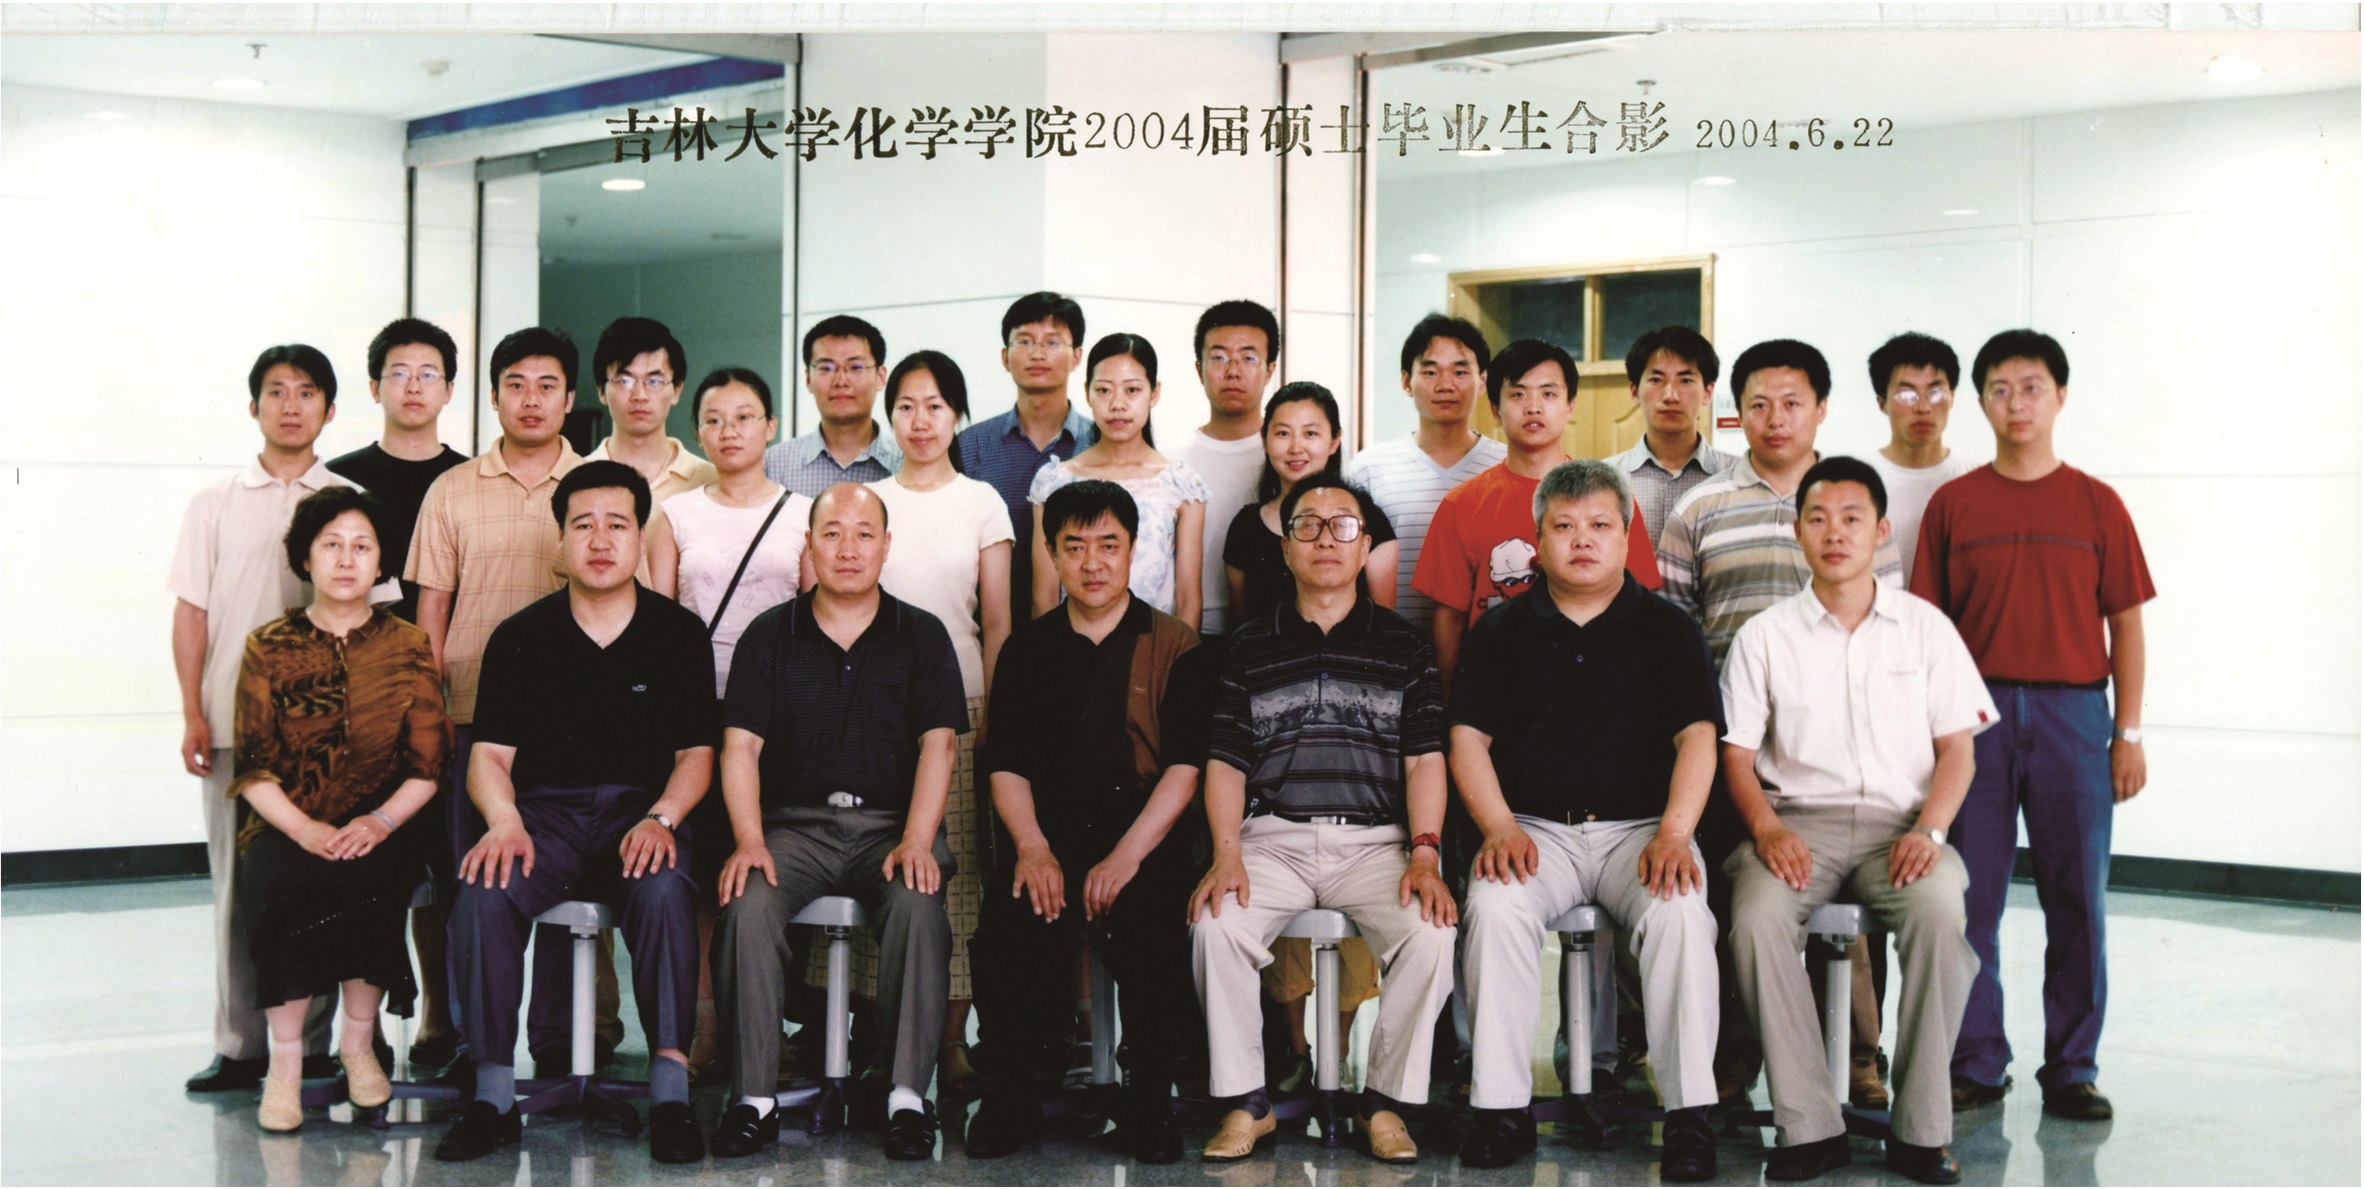 4066金沙(中国)责任有限公司官网2004届硕士毕业生合影